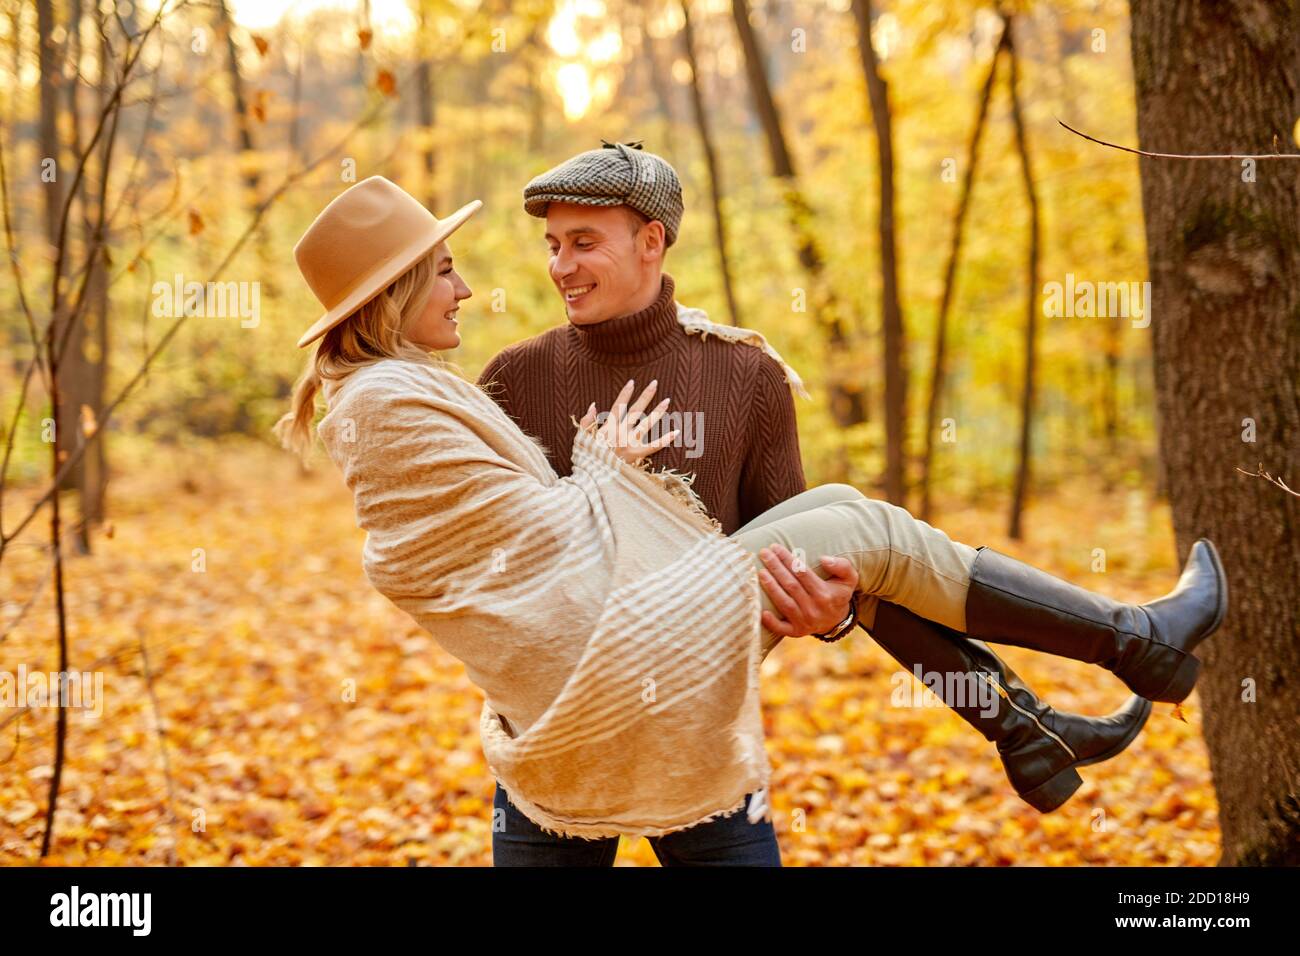 Verheiratete Paare verbringen Zeit an sonnigen Herbsttag in der Herbstnatur, sie haben glückliche Zeit zusammen, Mann halten Frau in den Händen, Blick auf jeden ther mit Liebe Stockfoto